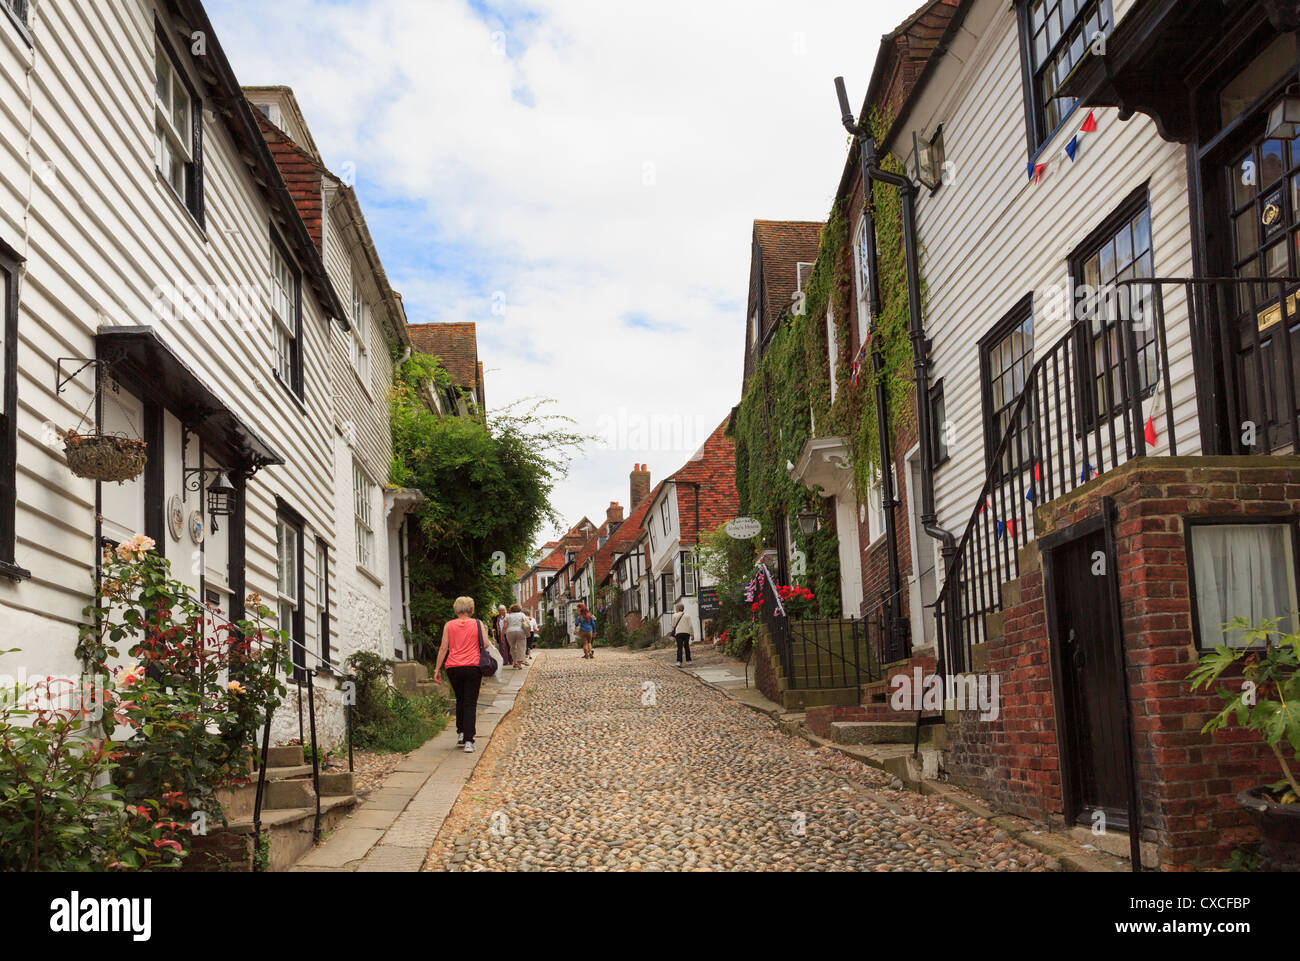 Sehen Sie die berühmten schmalen gepflasterten Straße gesäumt von malerischen alten Häusern in Mermaid Street, Roggen, East Sussex, England, UK, Großbritannien Stockfoto